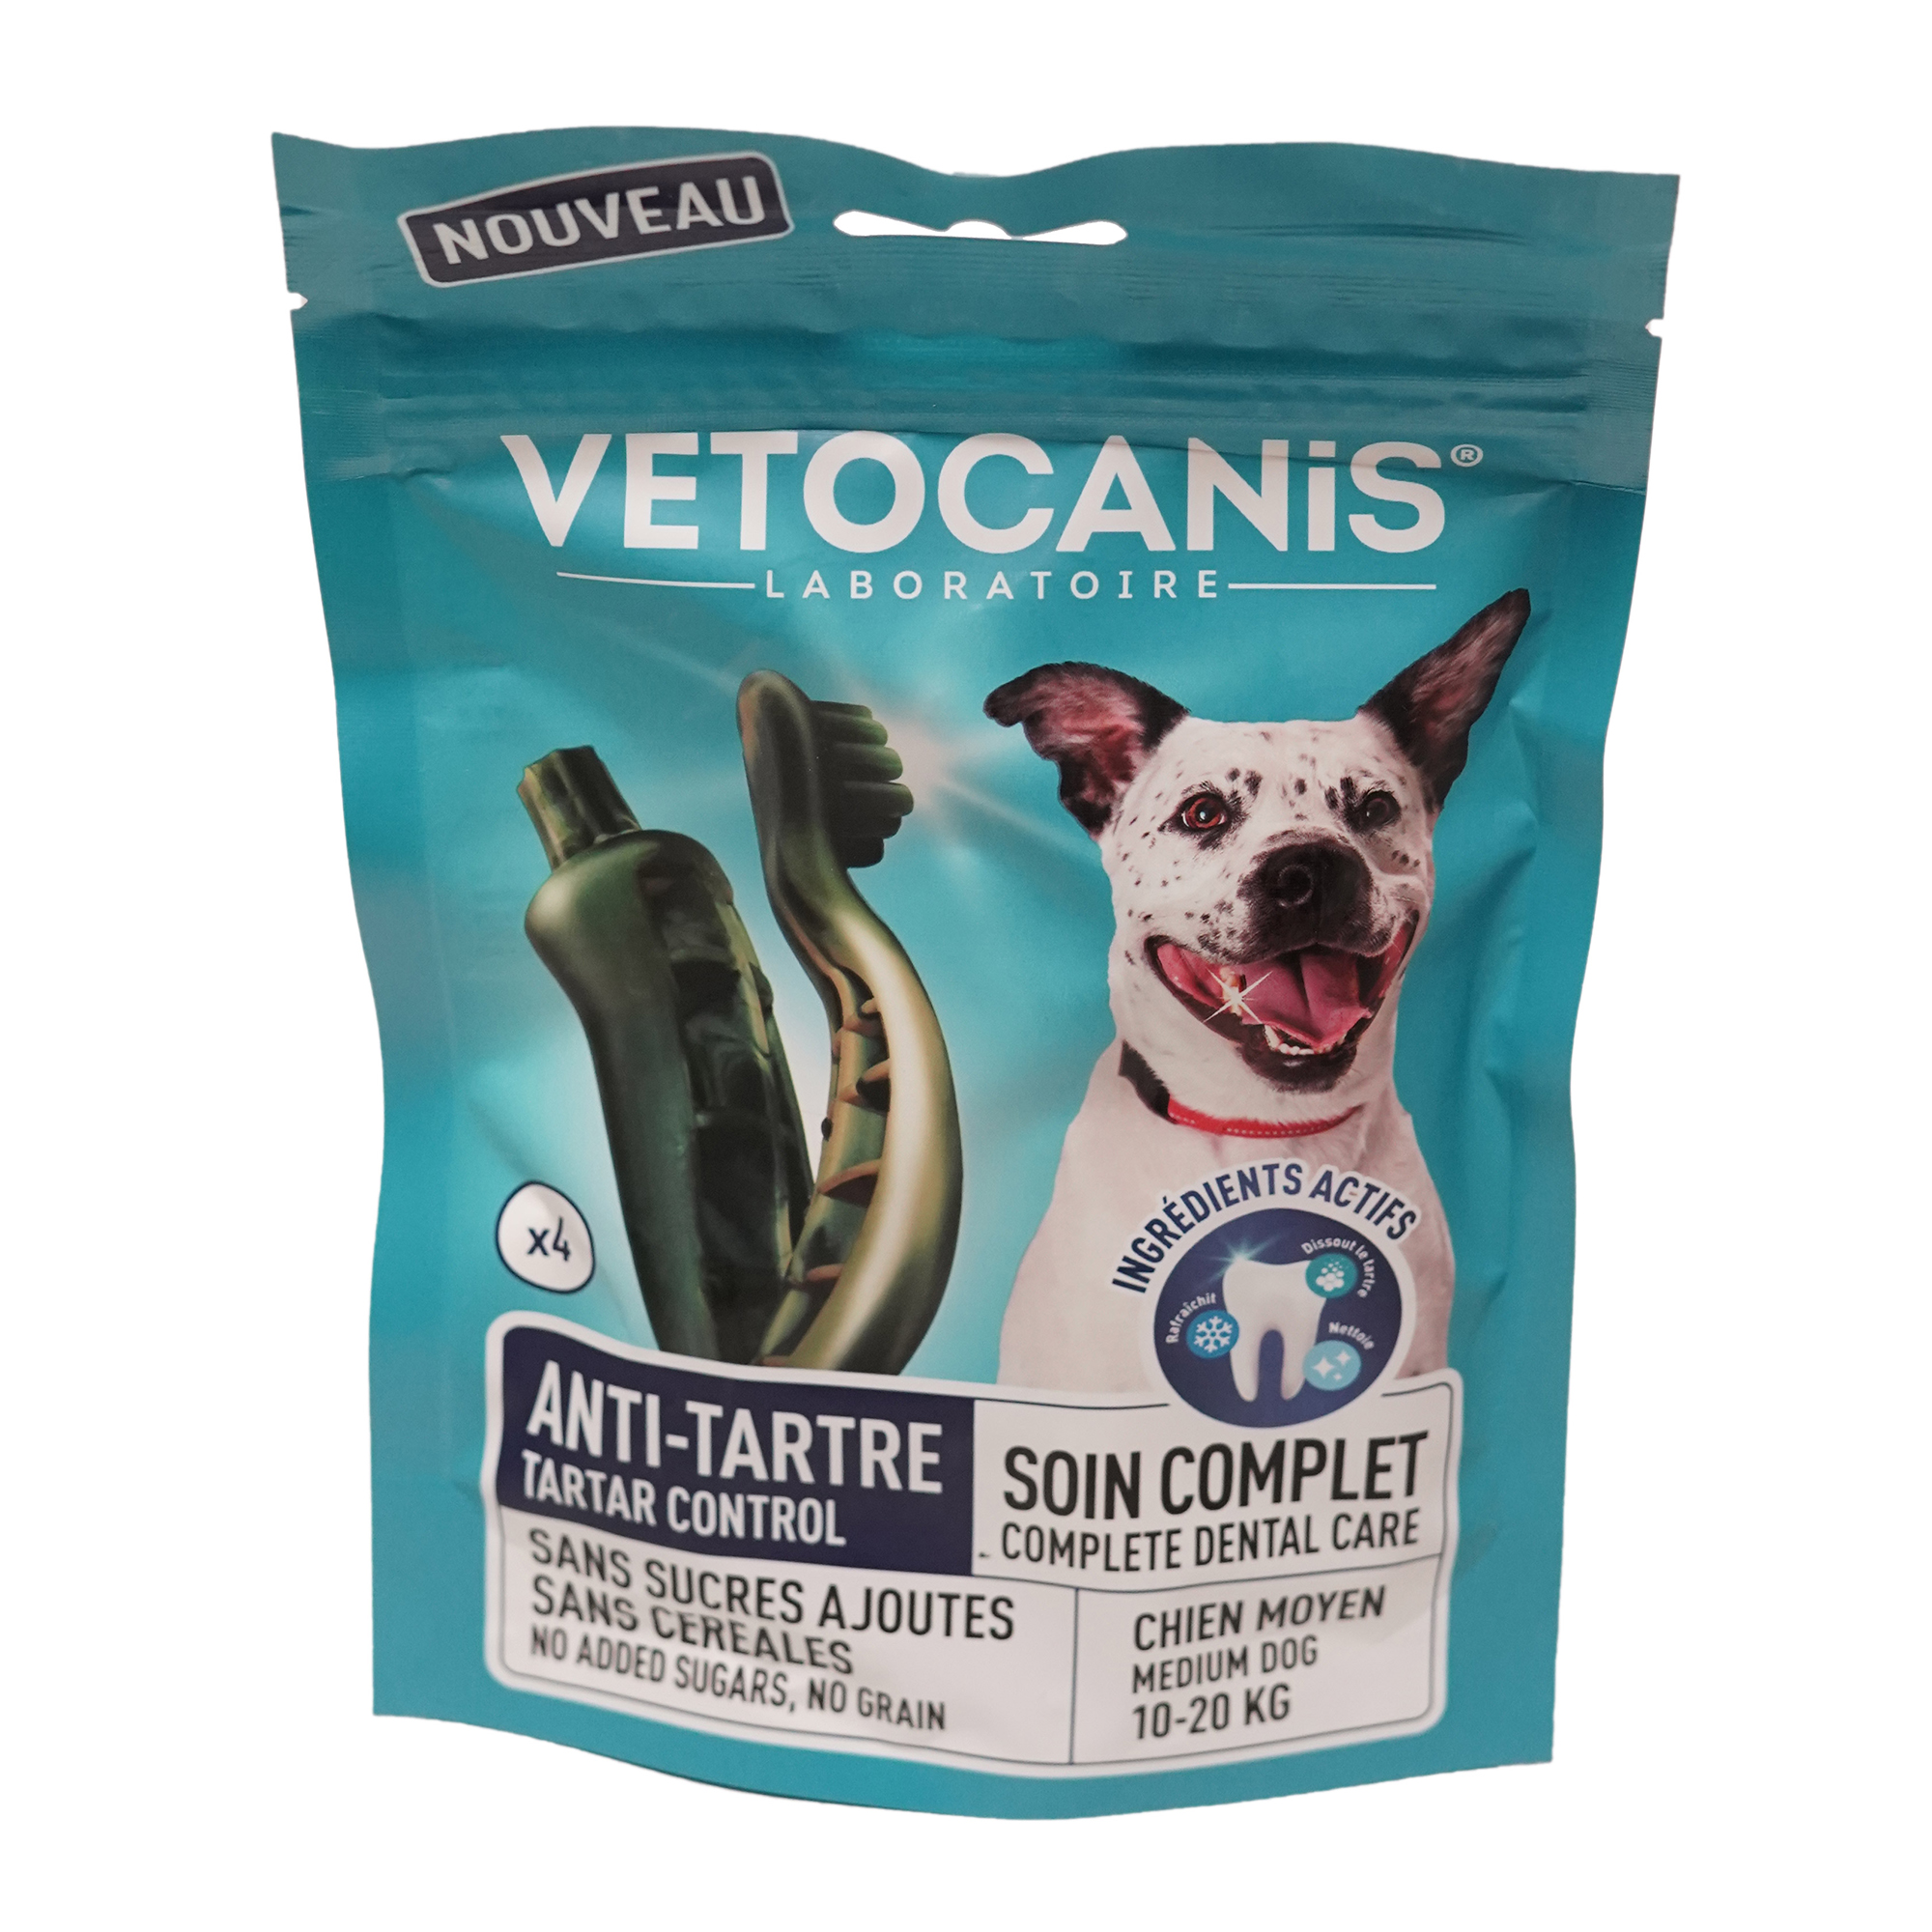 Tuggben för hundar från Vetocanis som förebygger tandsten, visar vår bästsäljande produkt för optimal dental hälsa hos hundar.